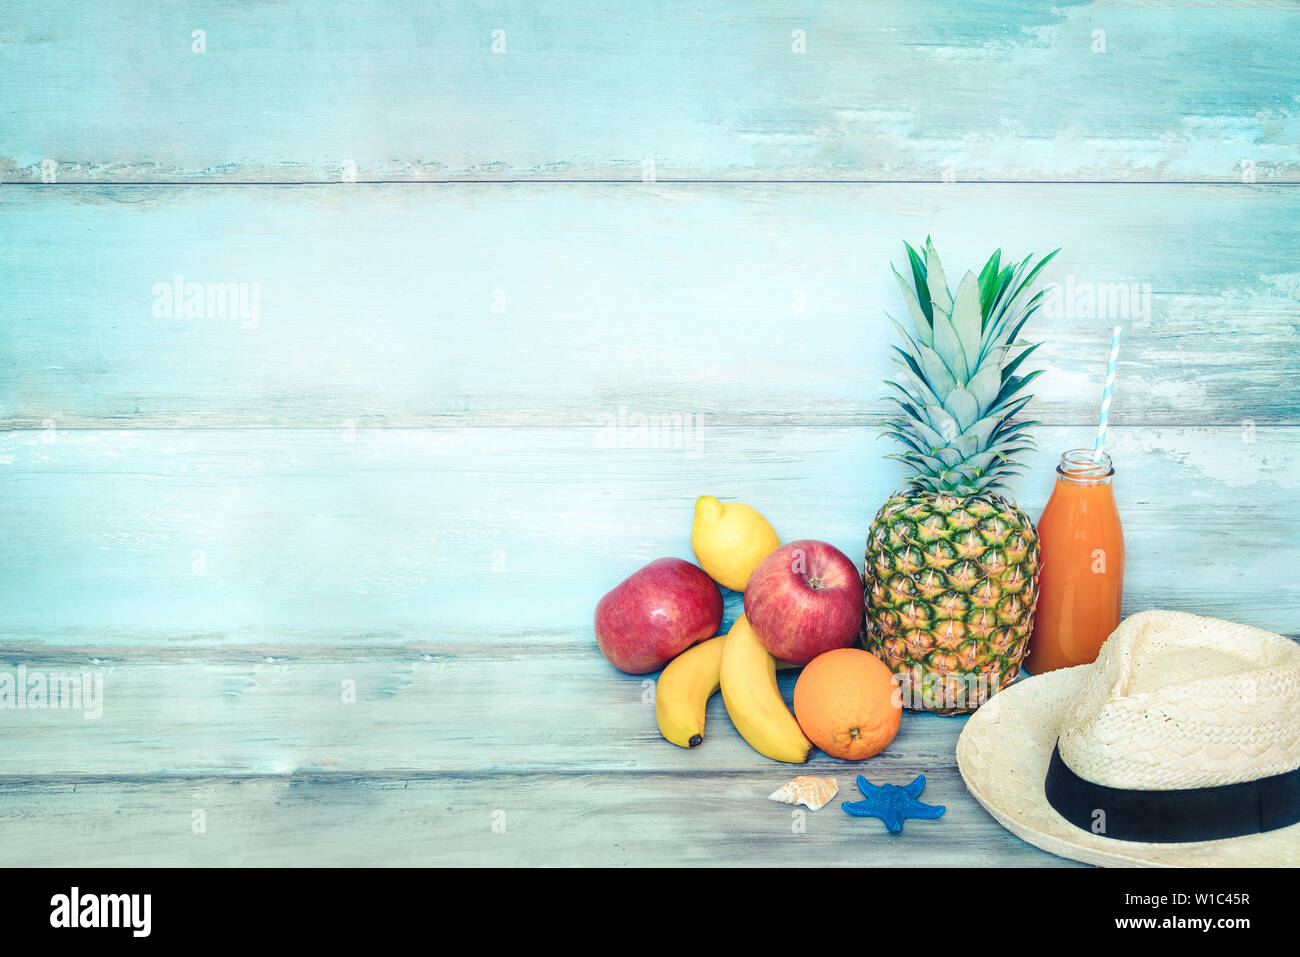 Sommer Konzept stillife - ein Haufen von frischen Früchten, Strohhut und eine Flasche multivitamin Saft vor einem blauen Holzmöbeln im Landhausstil Hintergrund. Stockfoto